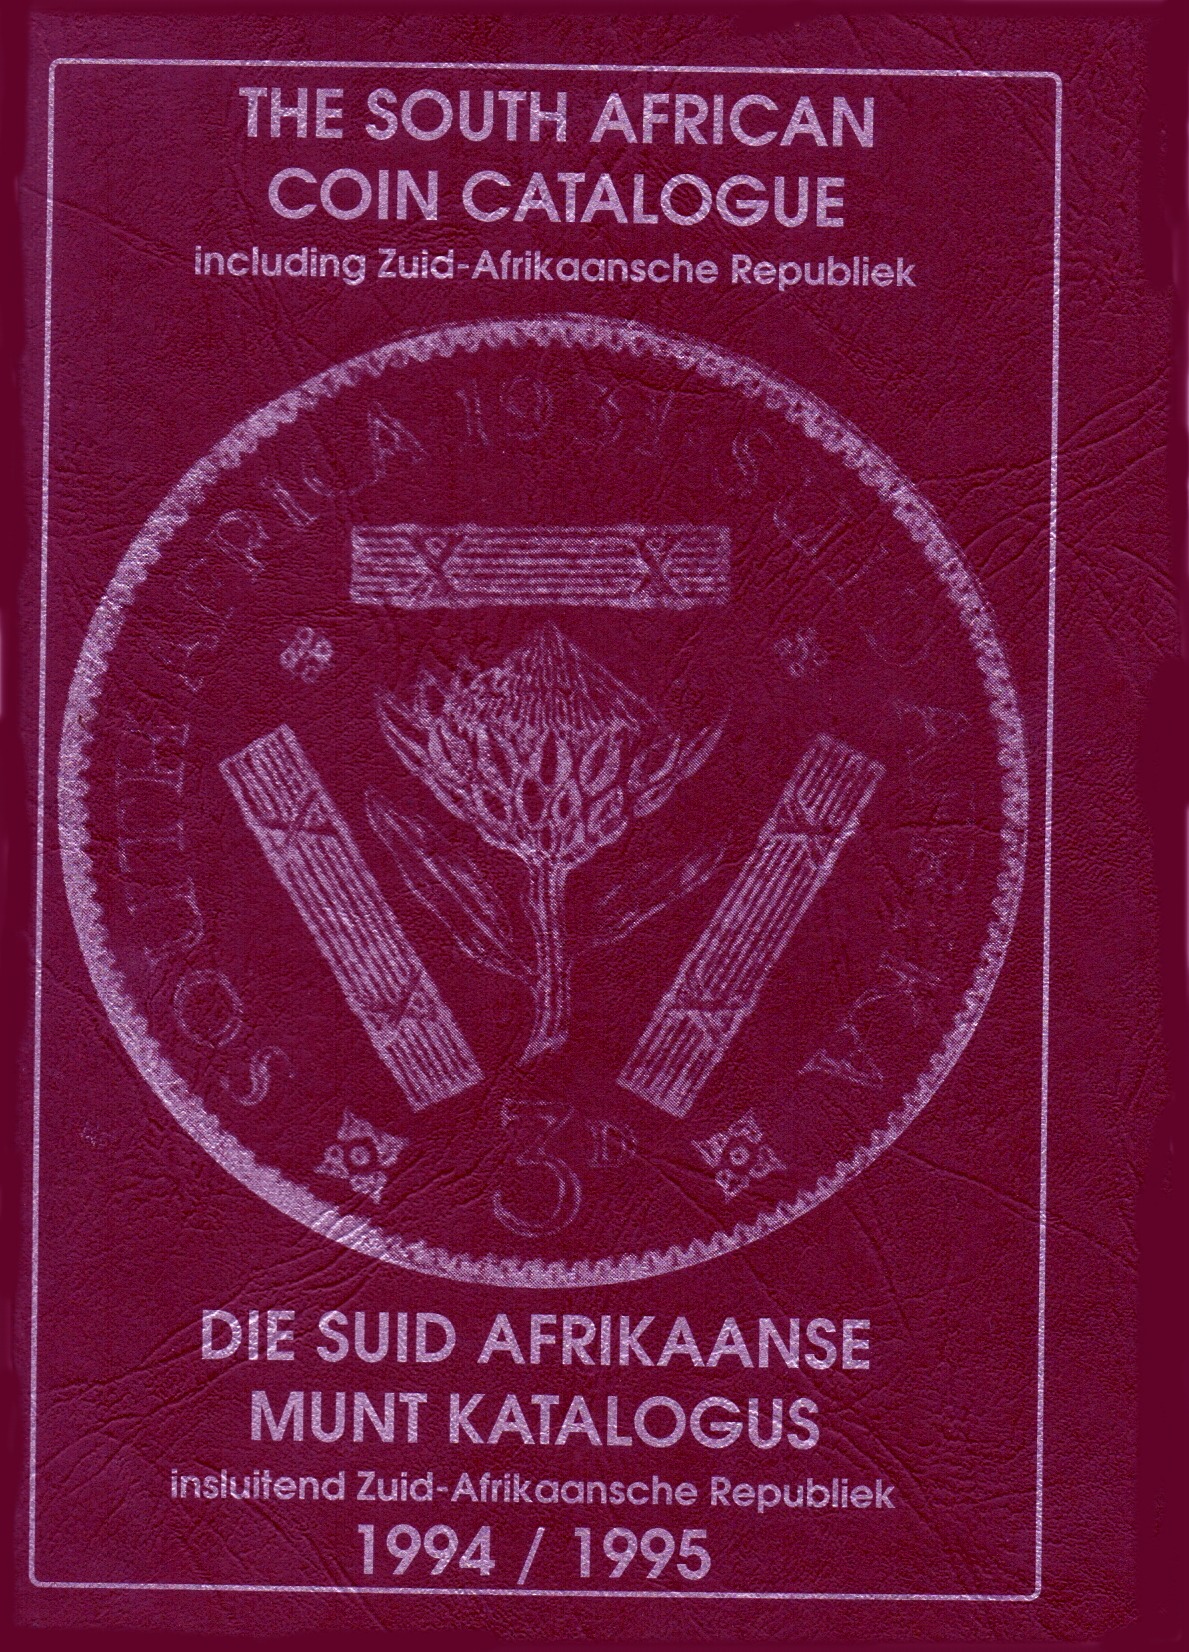 Randburg Coin Catalogue 1994 to 1995